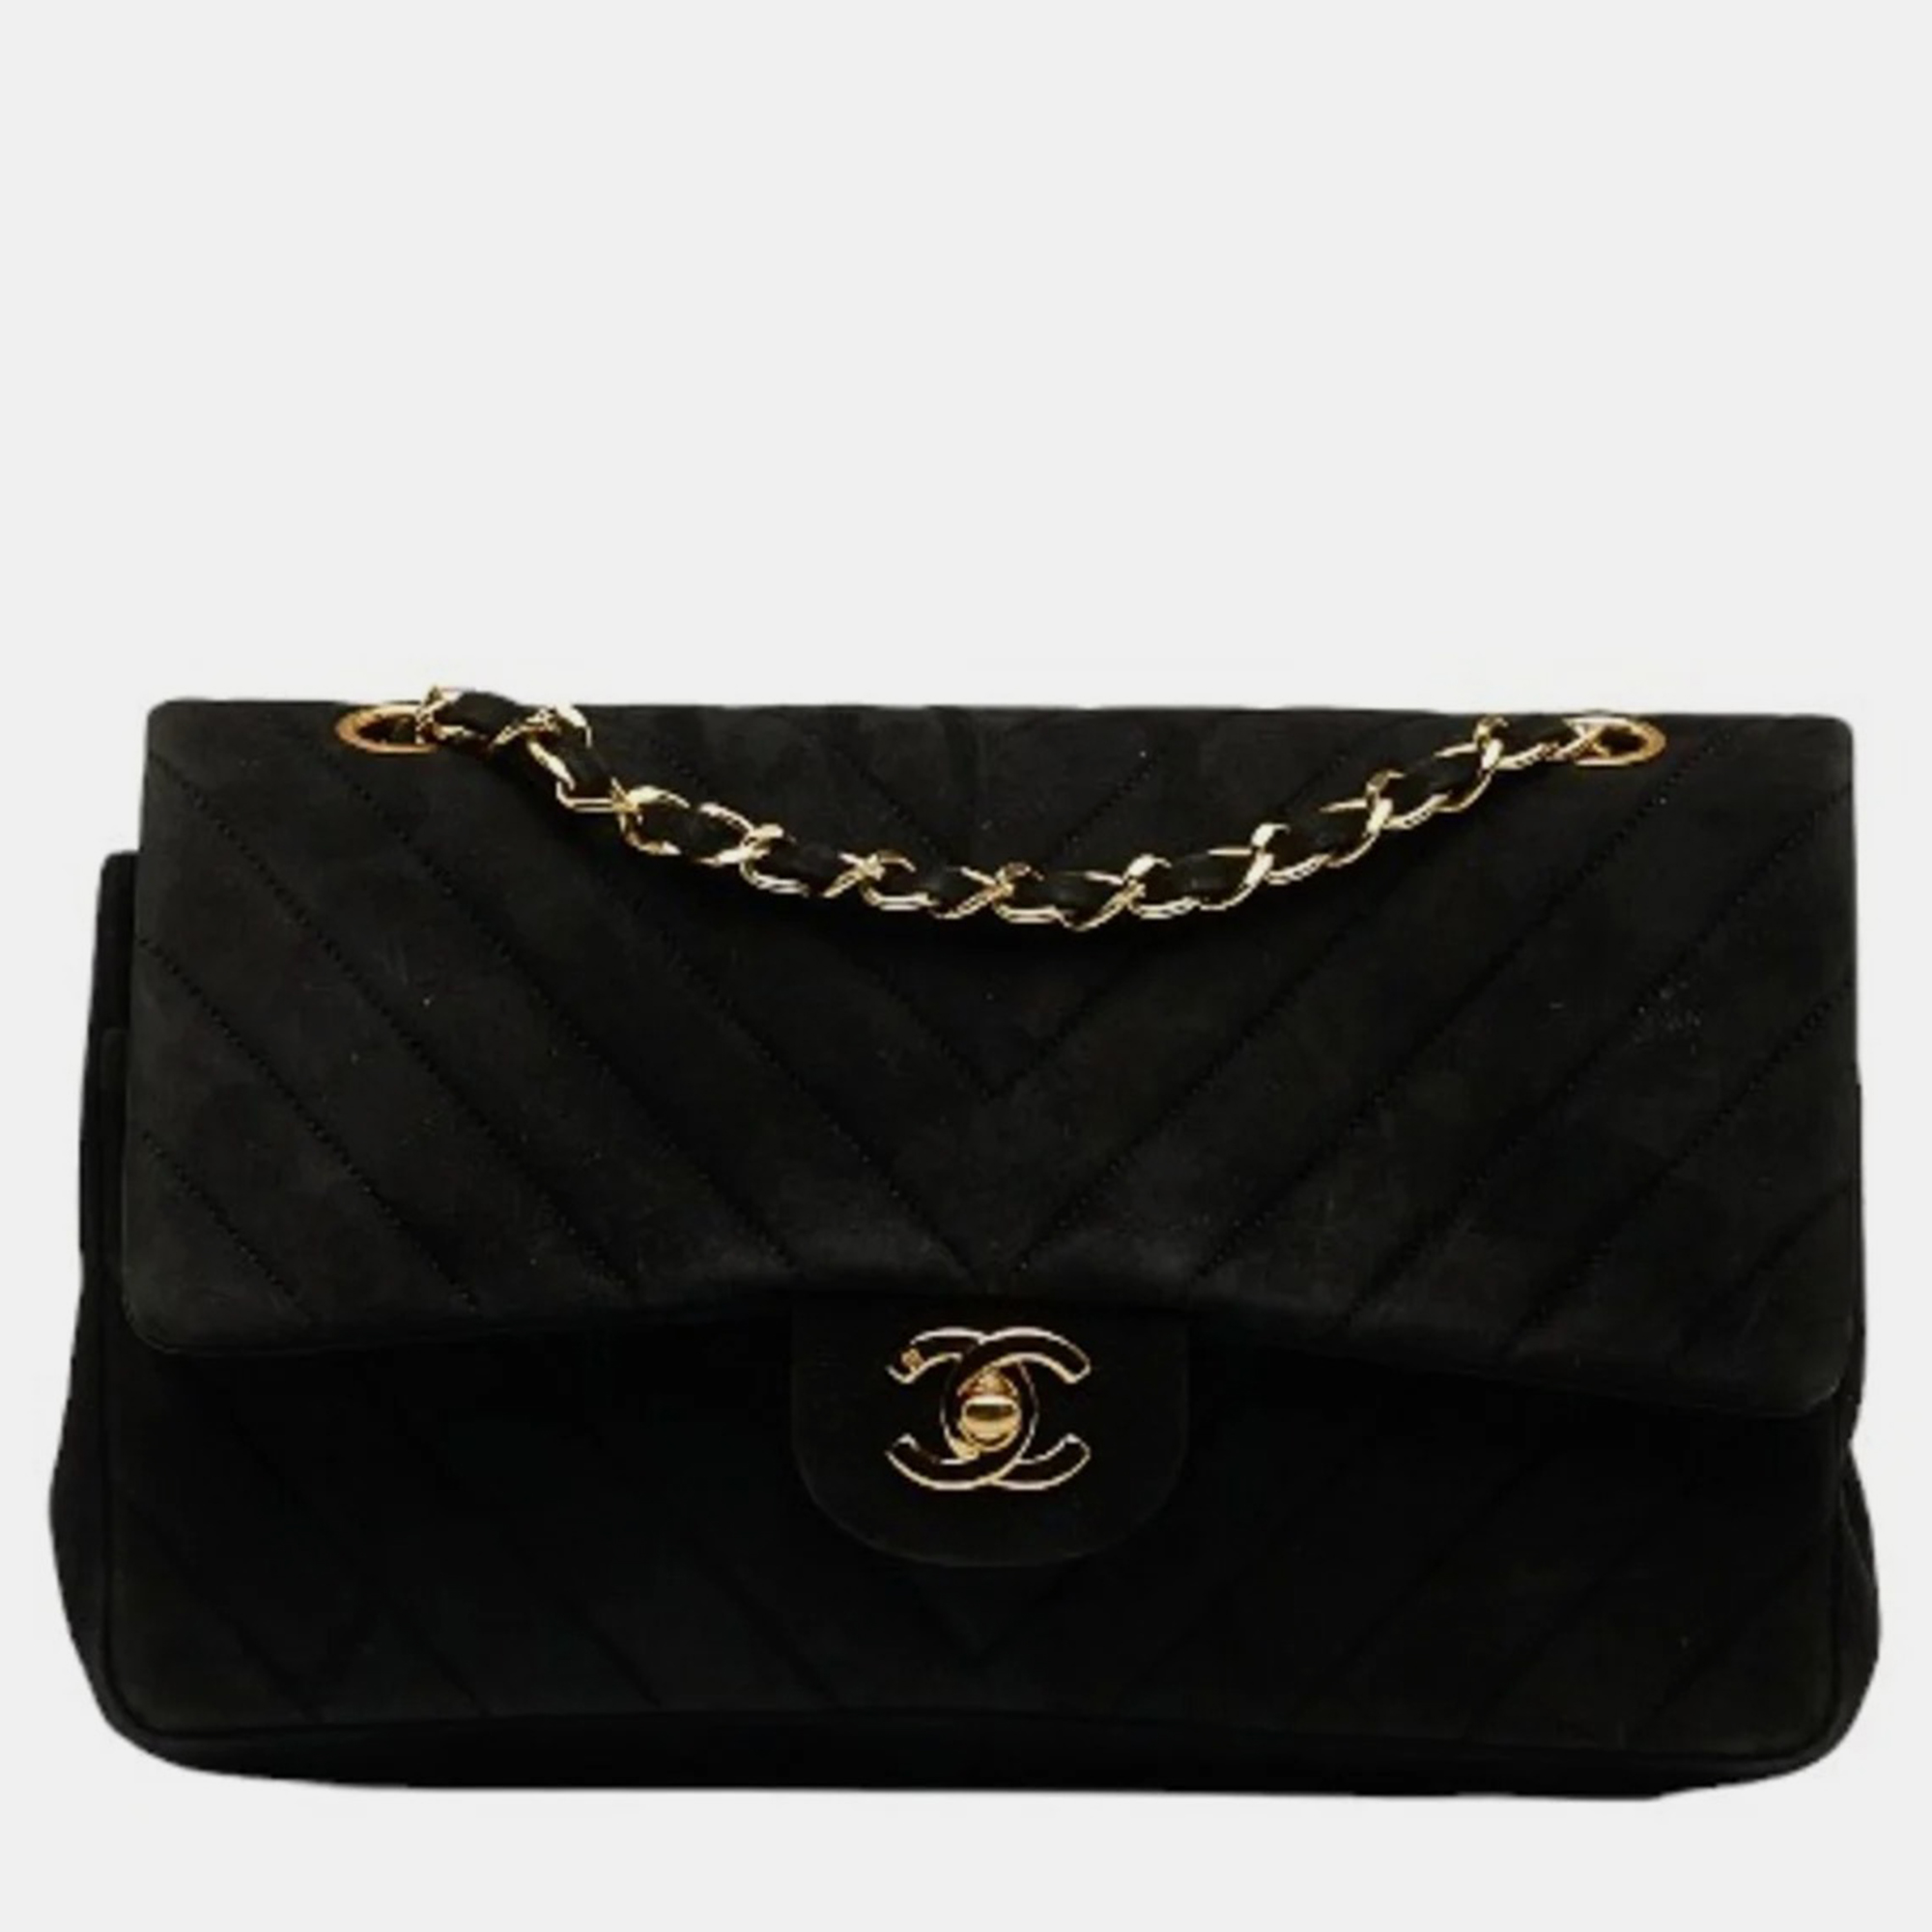 Chanel black suede chevron double flap bag